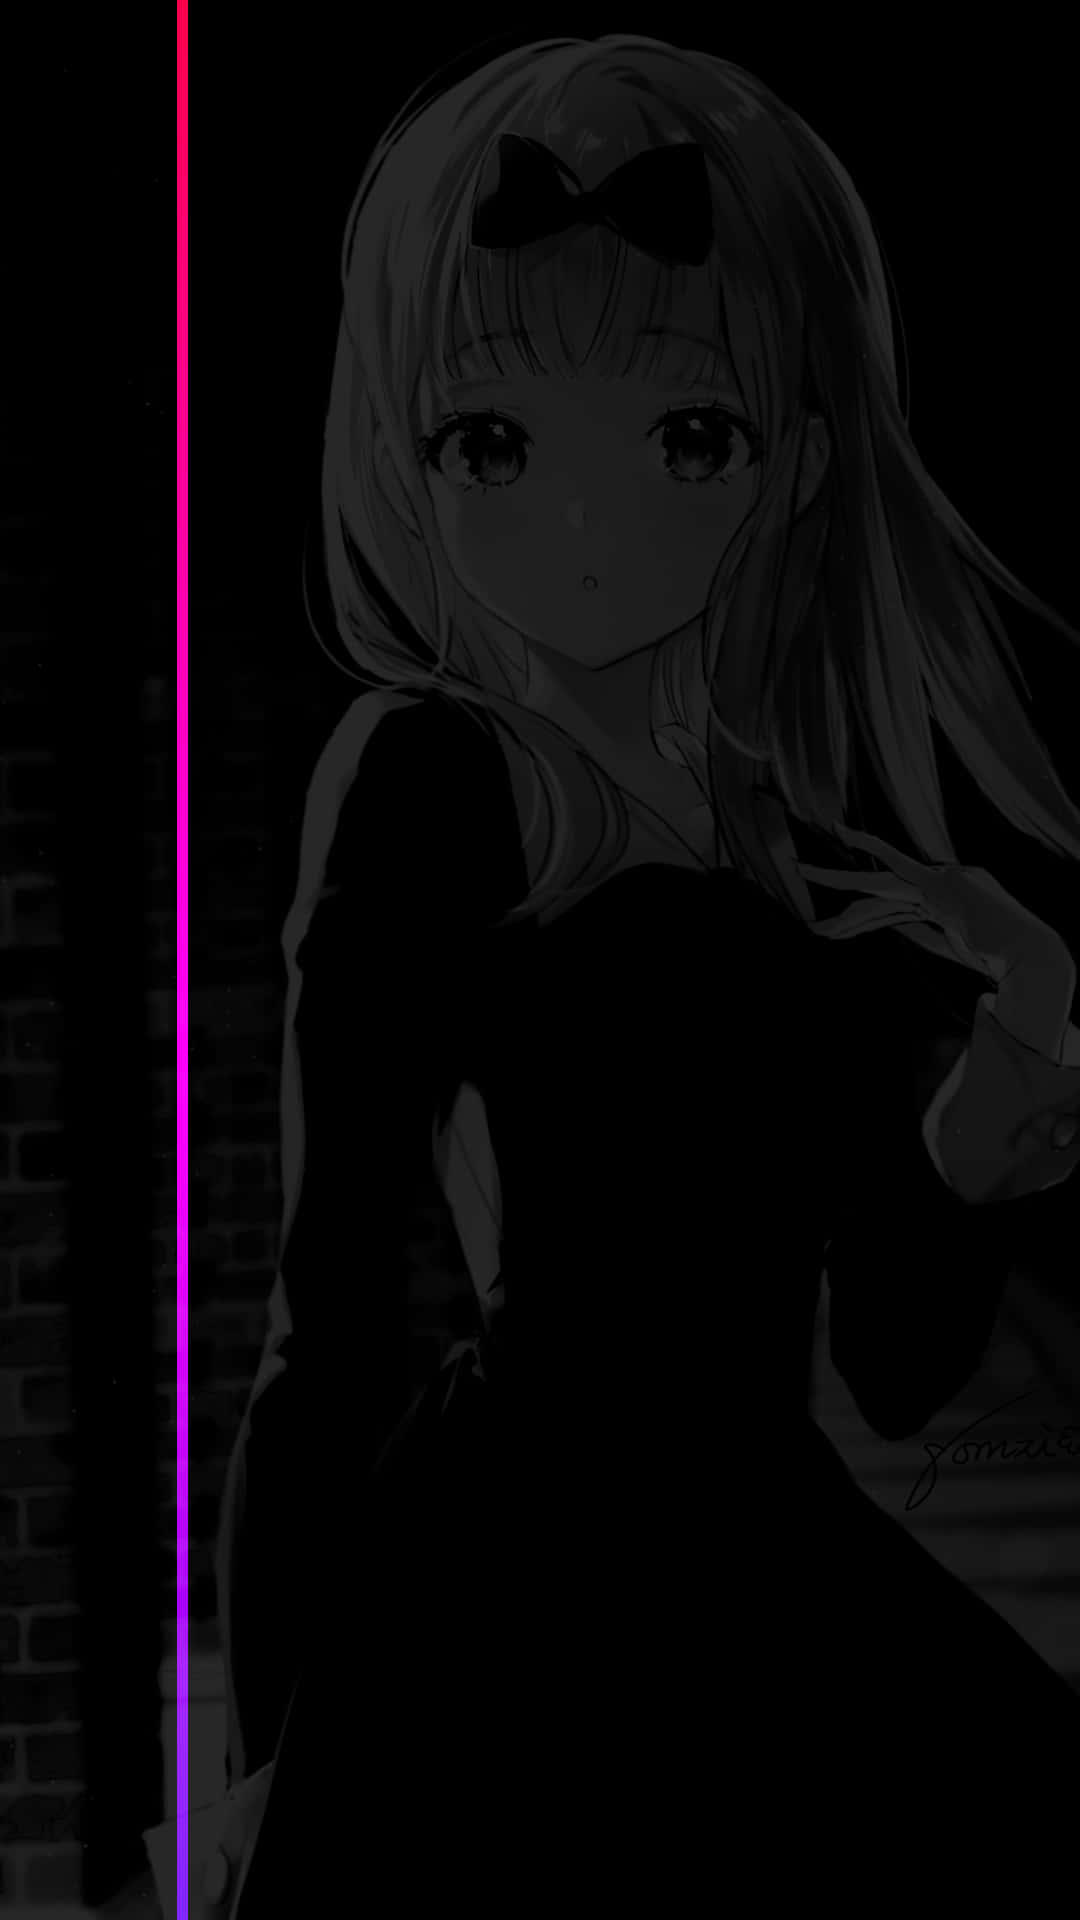 fotos de anime para perfil dark